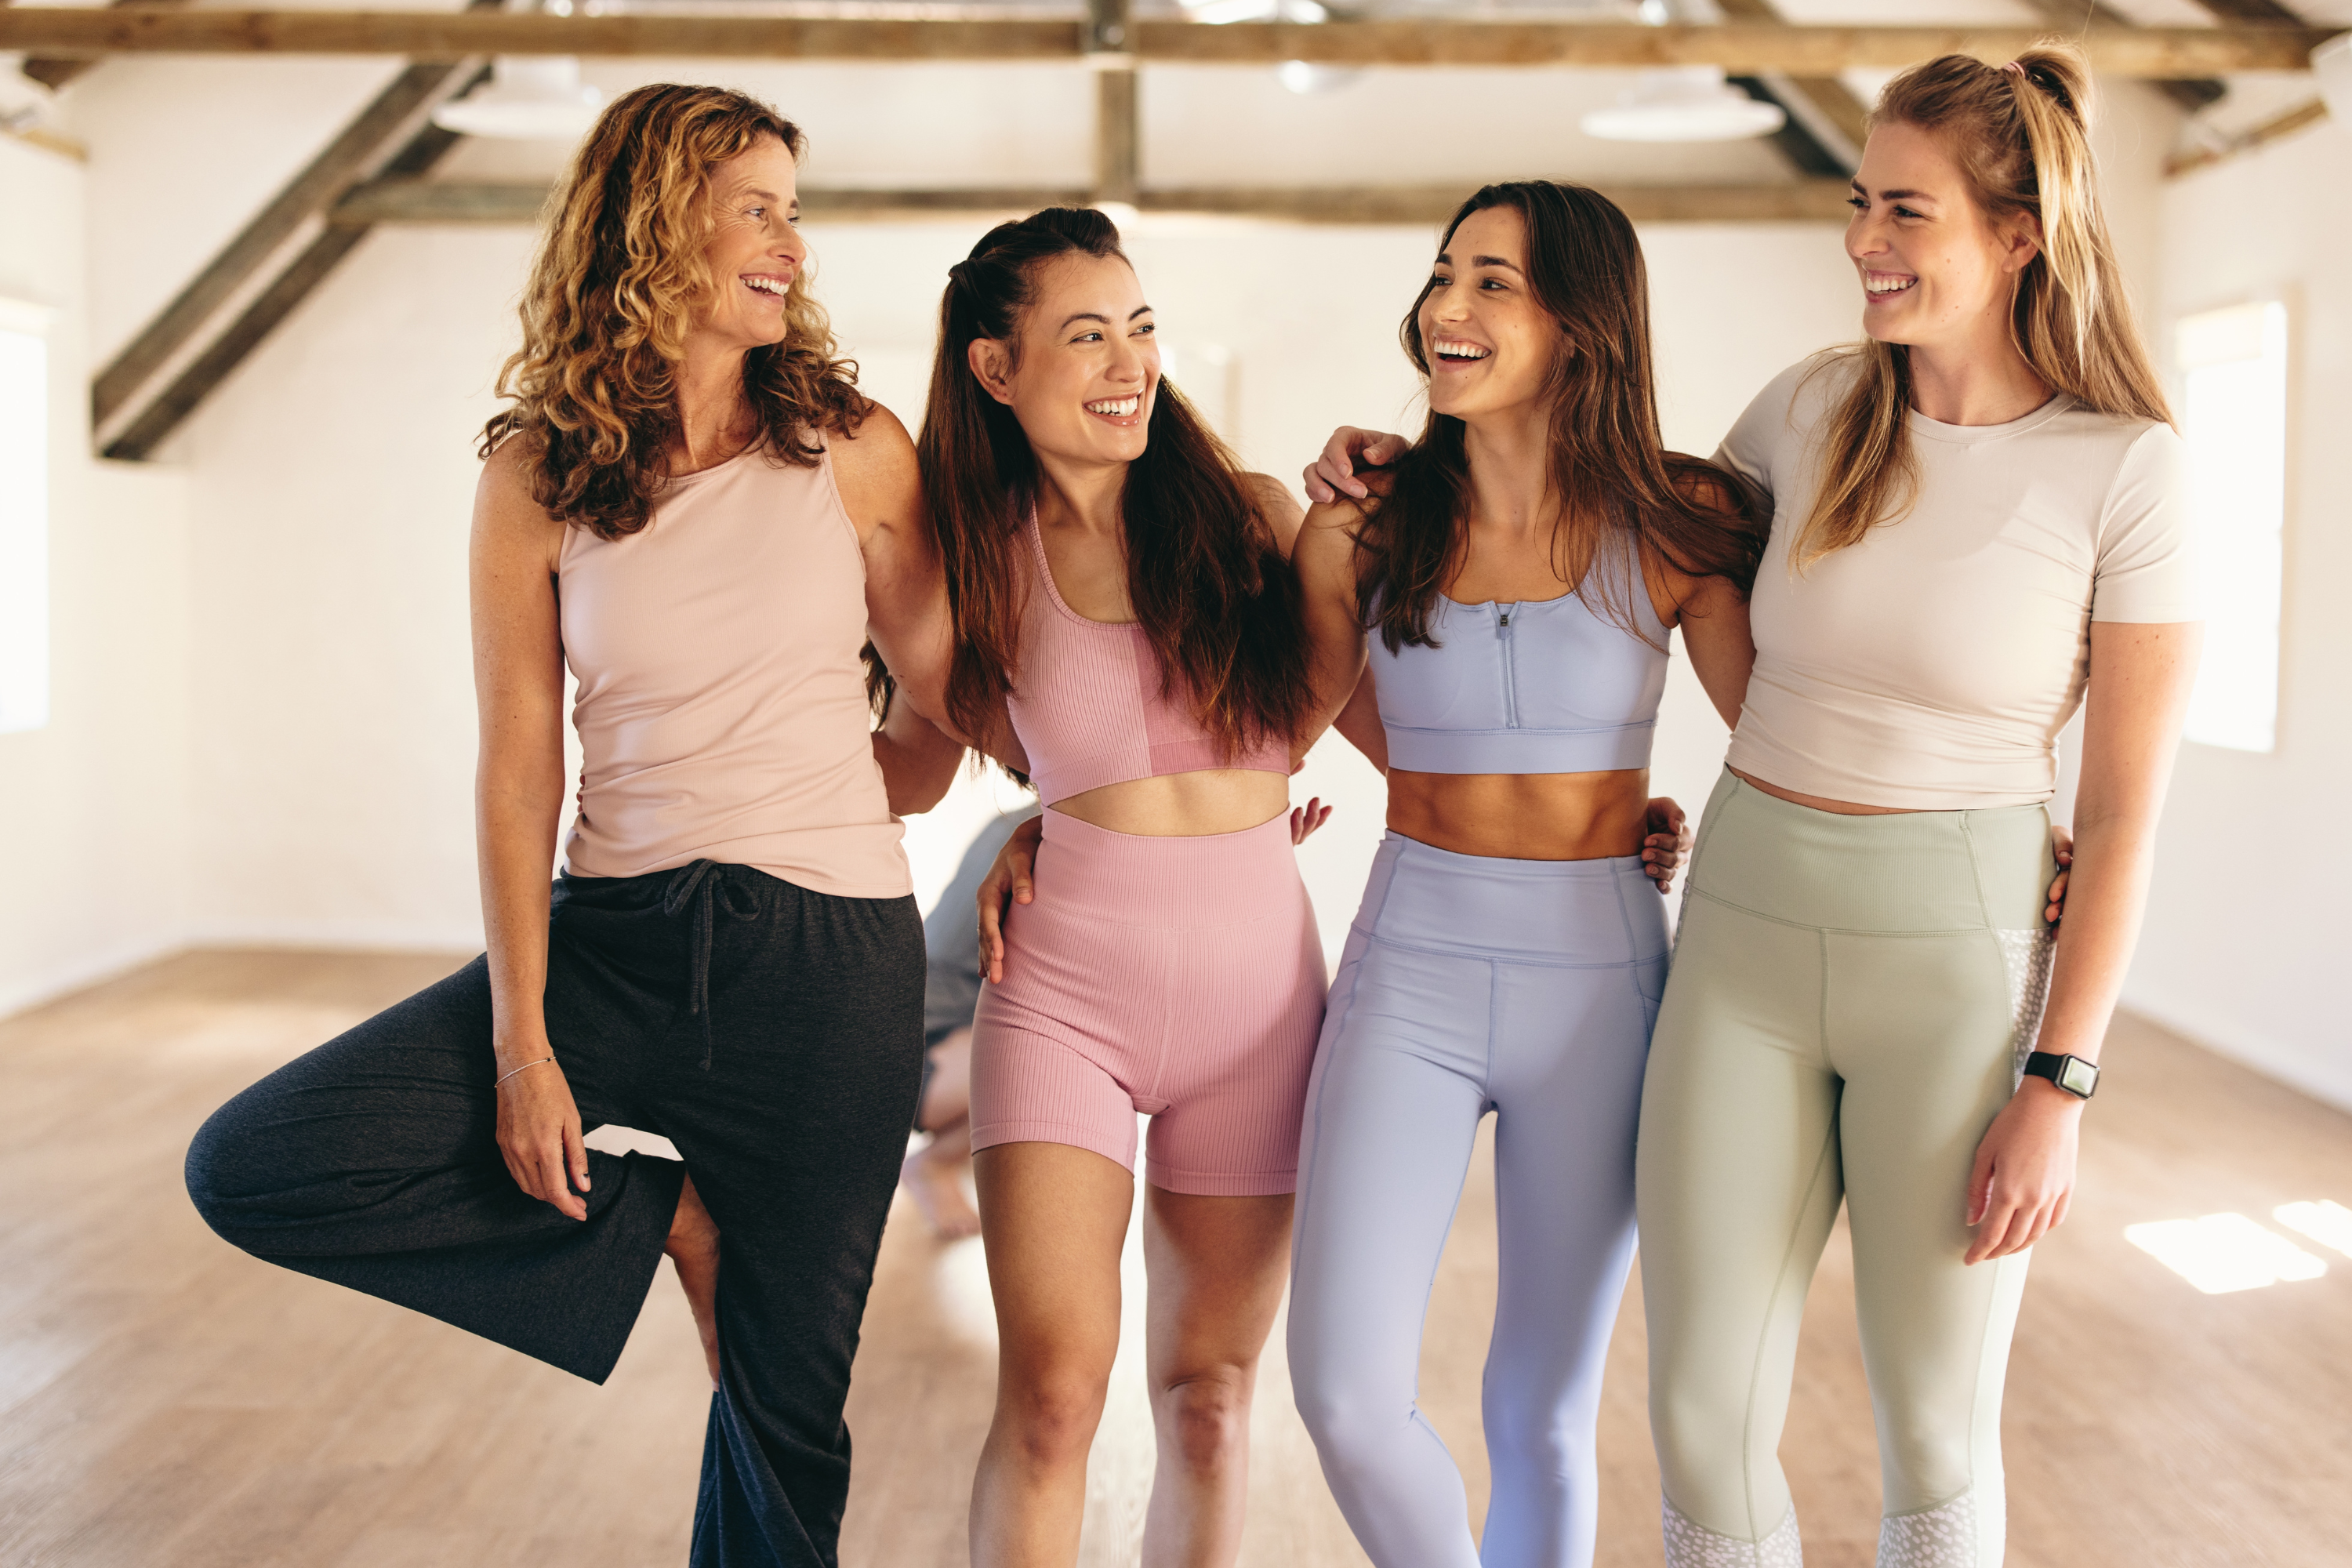 Vier Frauen in Sportbekleidung lächeln und stehen zusammen.